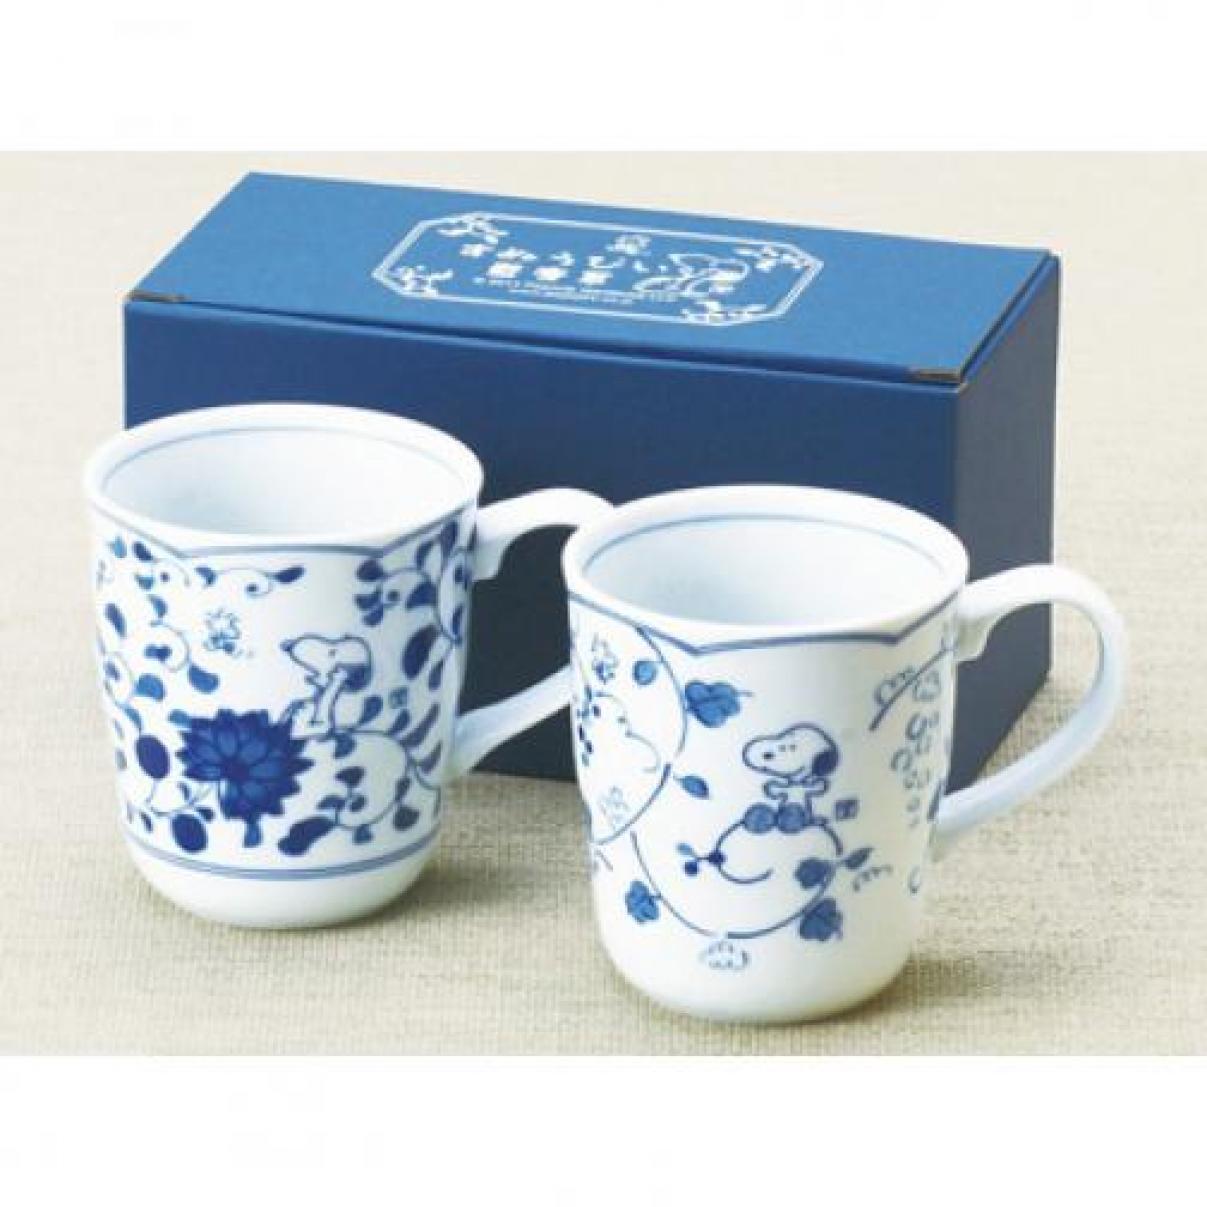 Snoopy Indigo Arabesque Pair Mug Set of 2 Indigo Dye Japanese Style Pattern New